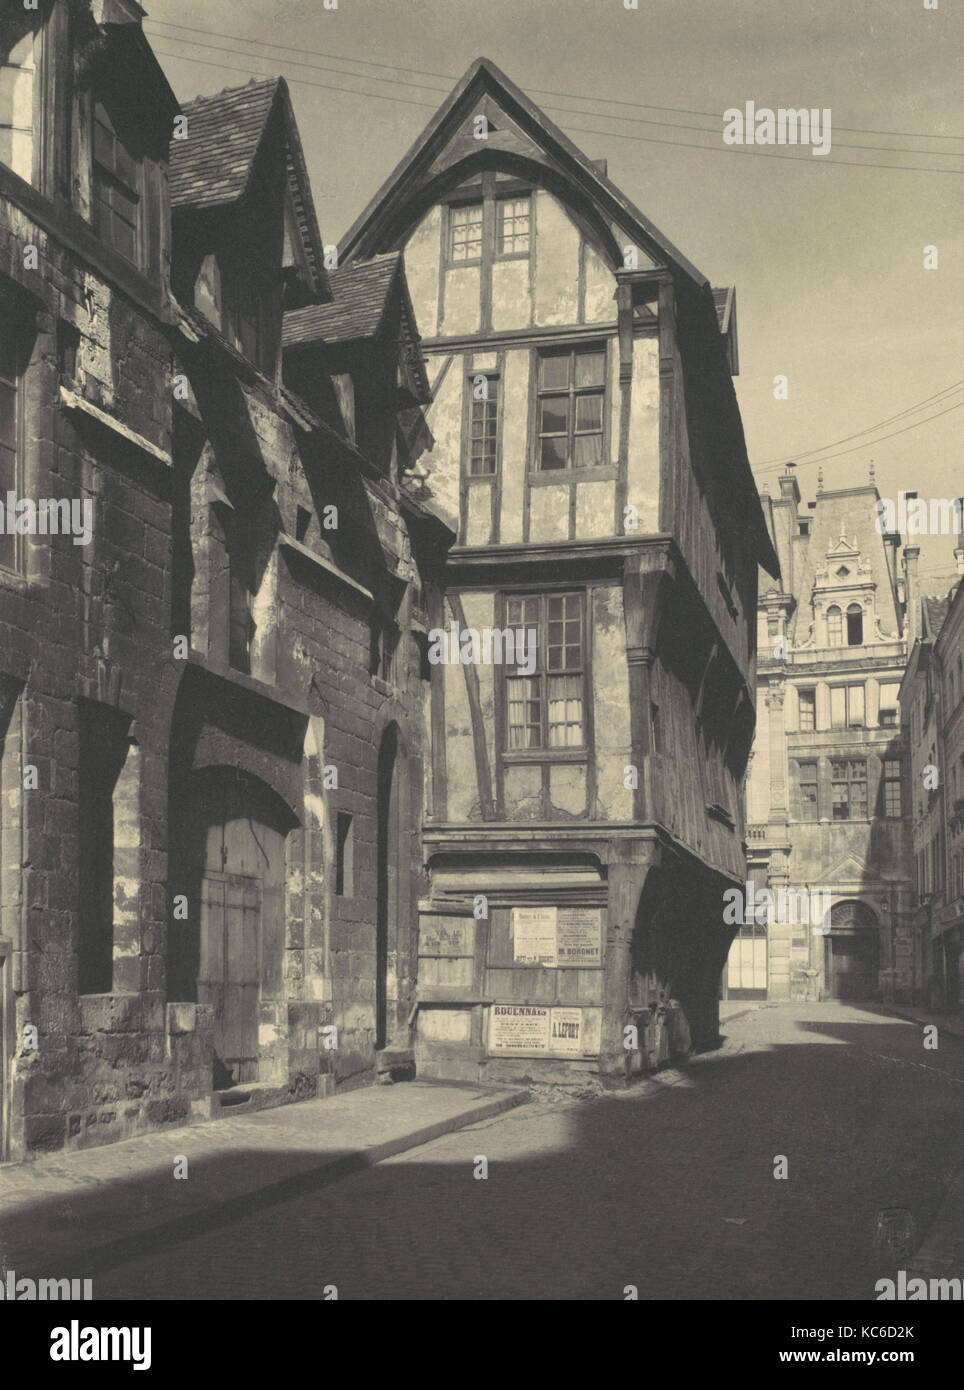 Maison Jeanne d'Arc, Rouen, Frederick H. Evans, 1900s Stock Photo